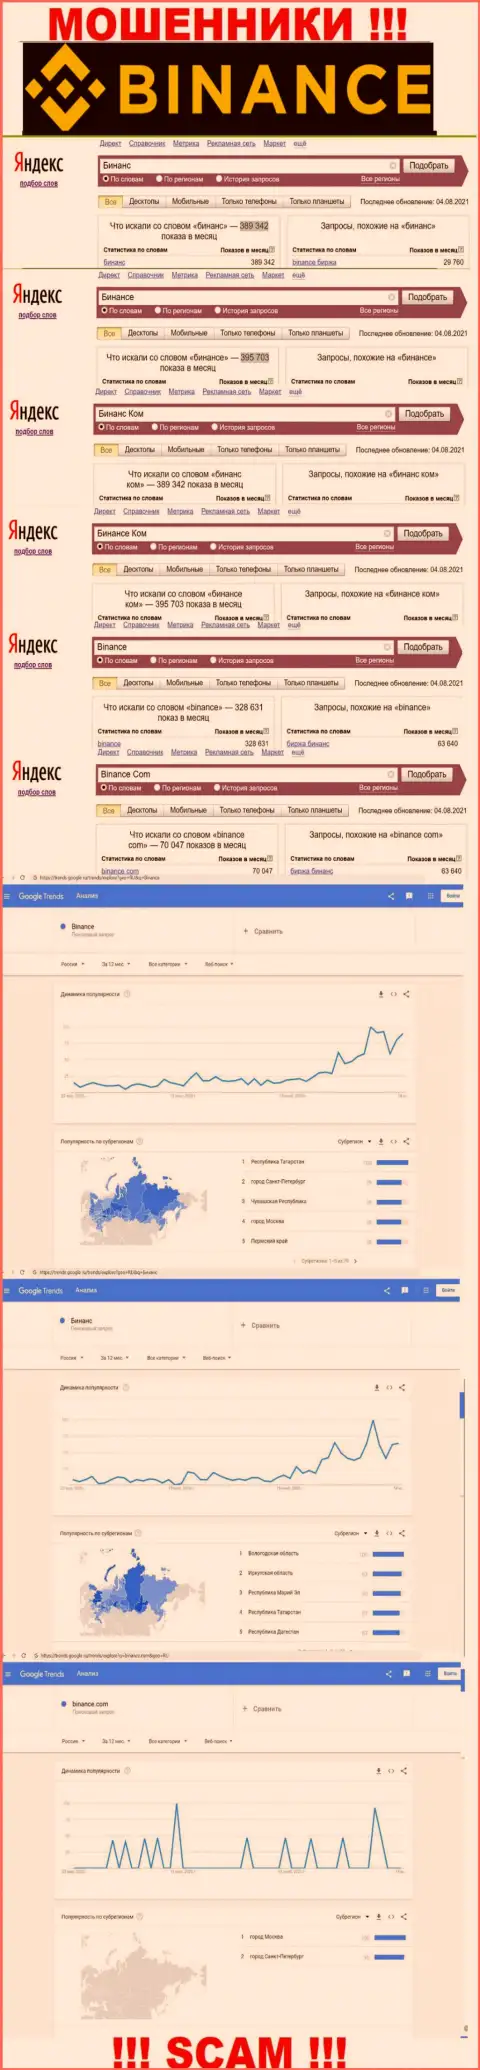 Статистические показатели о запросах в поисковиках интернет сети данных о компании Бинанс